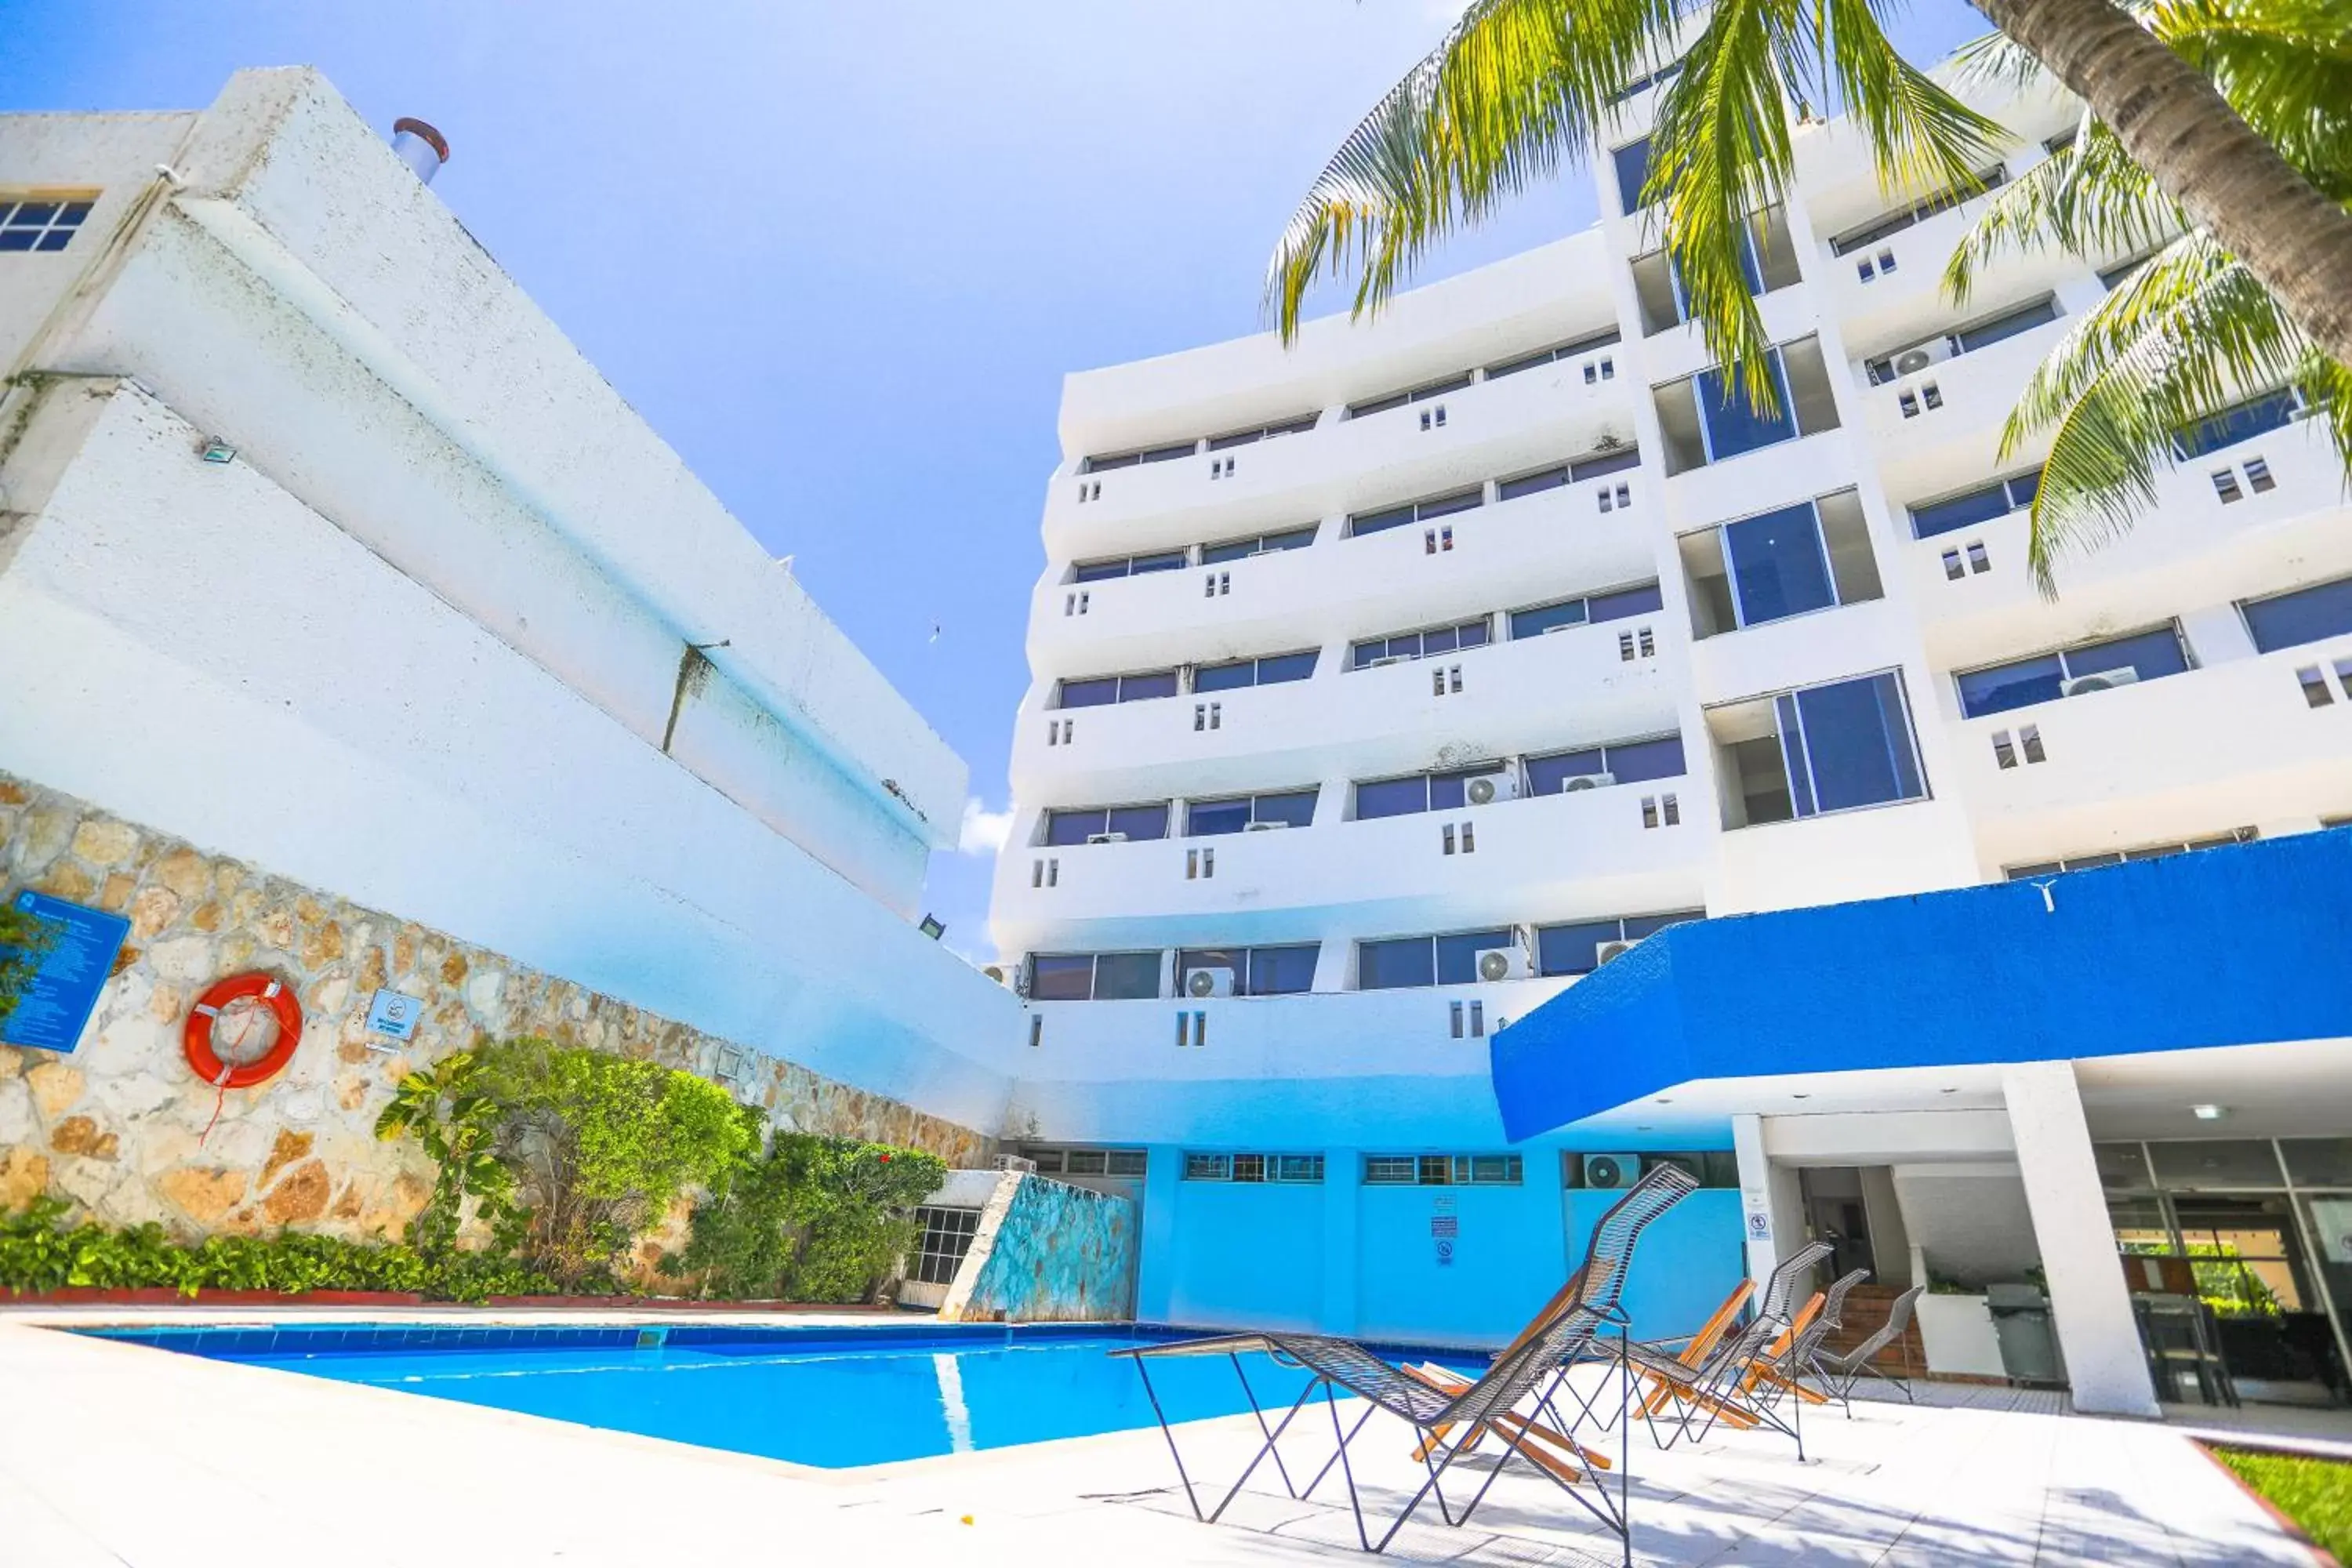 Swimming Pool in Hotel Caribe Internacional Cancun